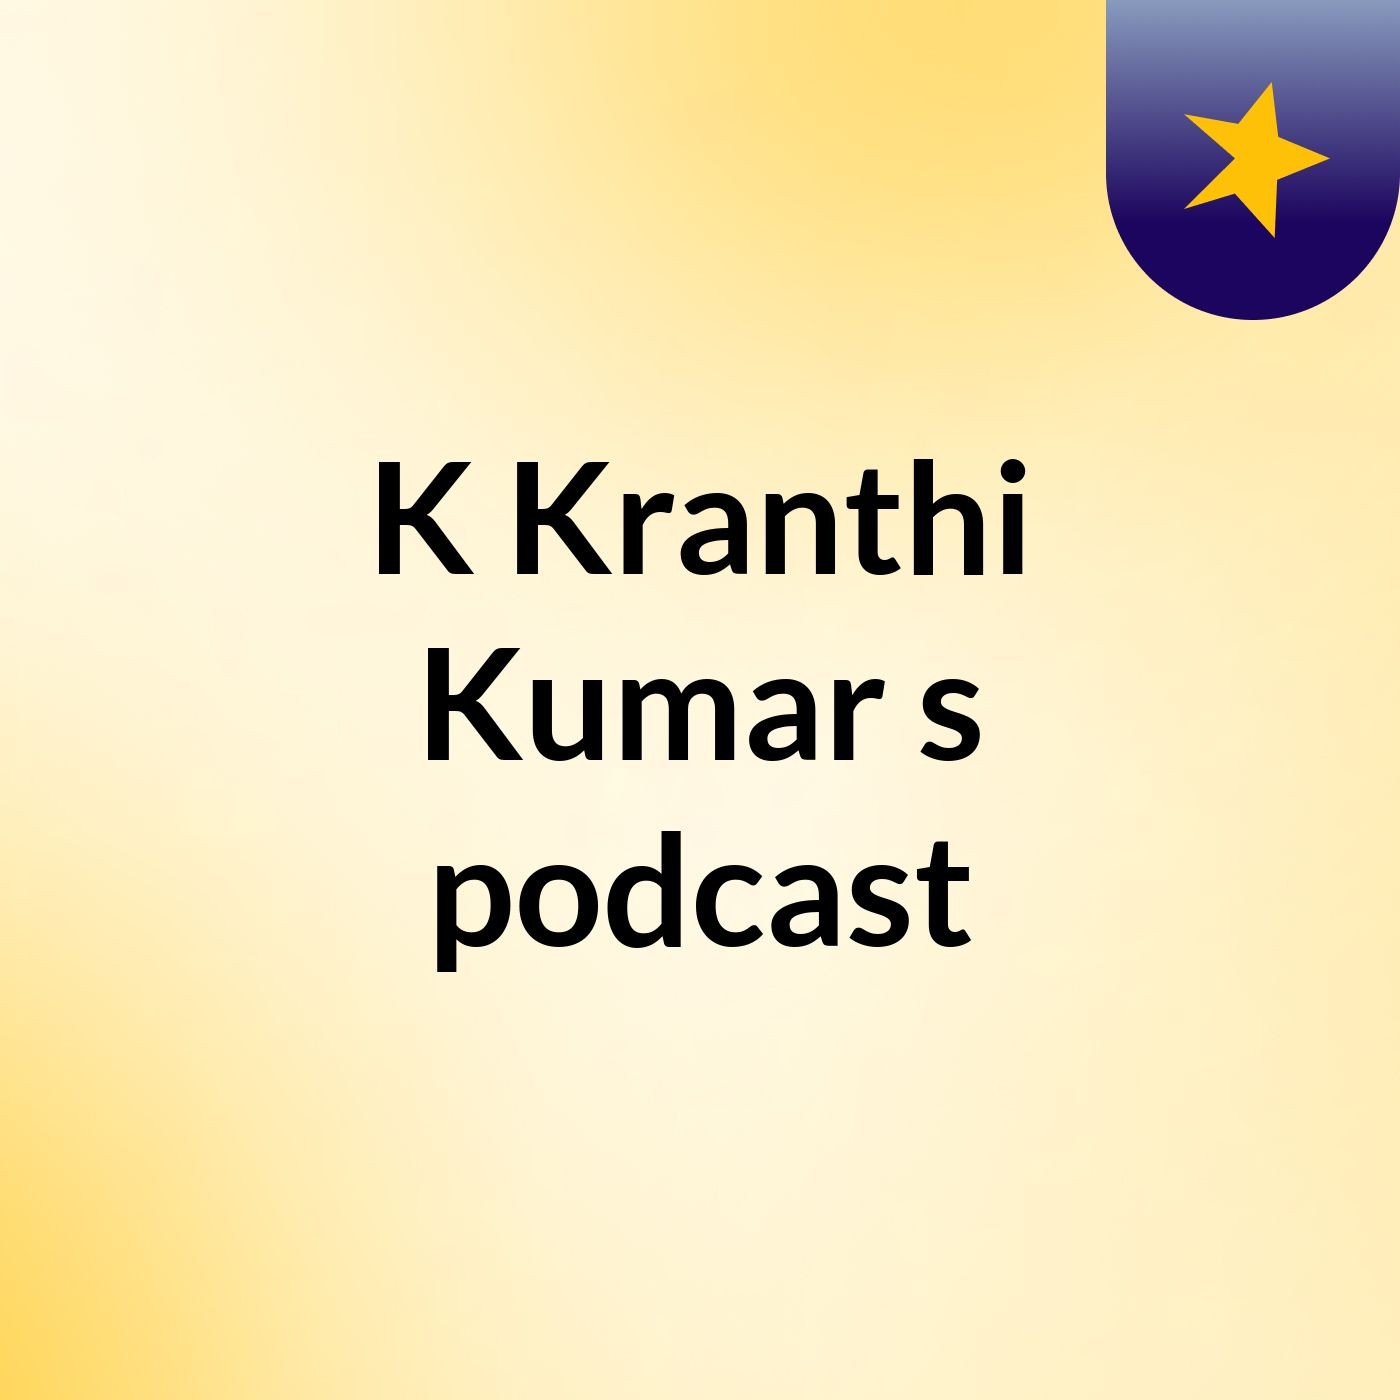 K Kranthi Kumar's podcast